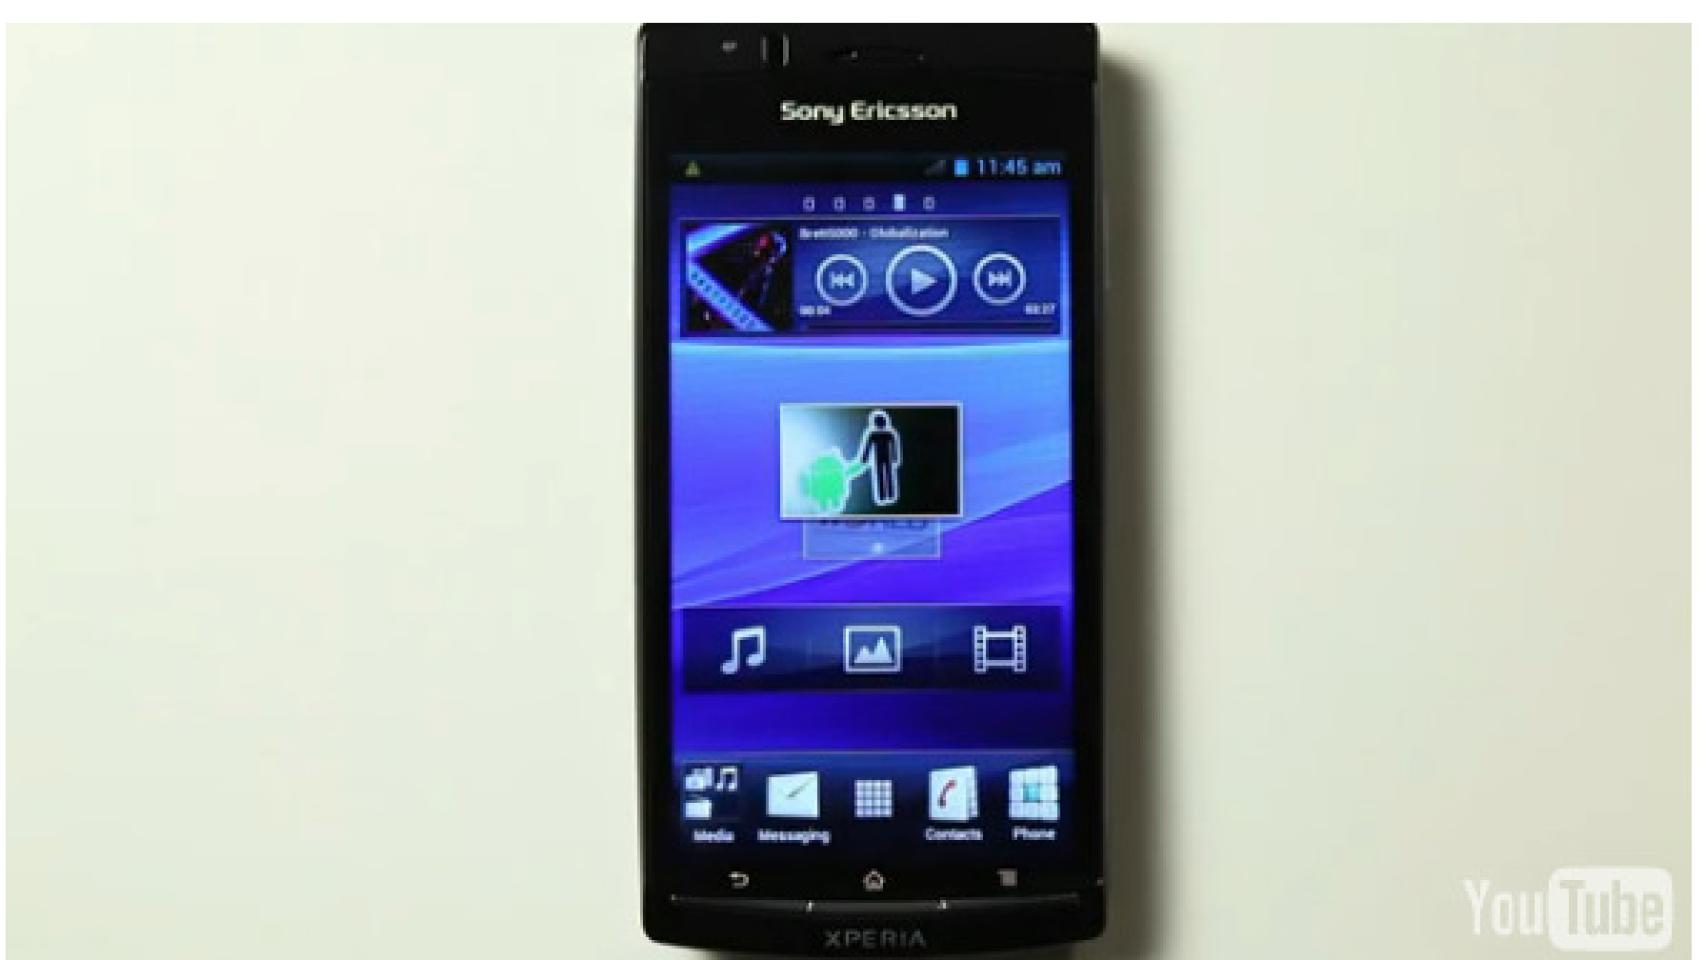 Android 4.0 Ice Cream Sandwich: Primeras pruebas en vídeo oficial con la gama Xperia de Sony Ericsson